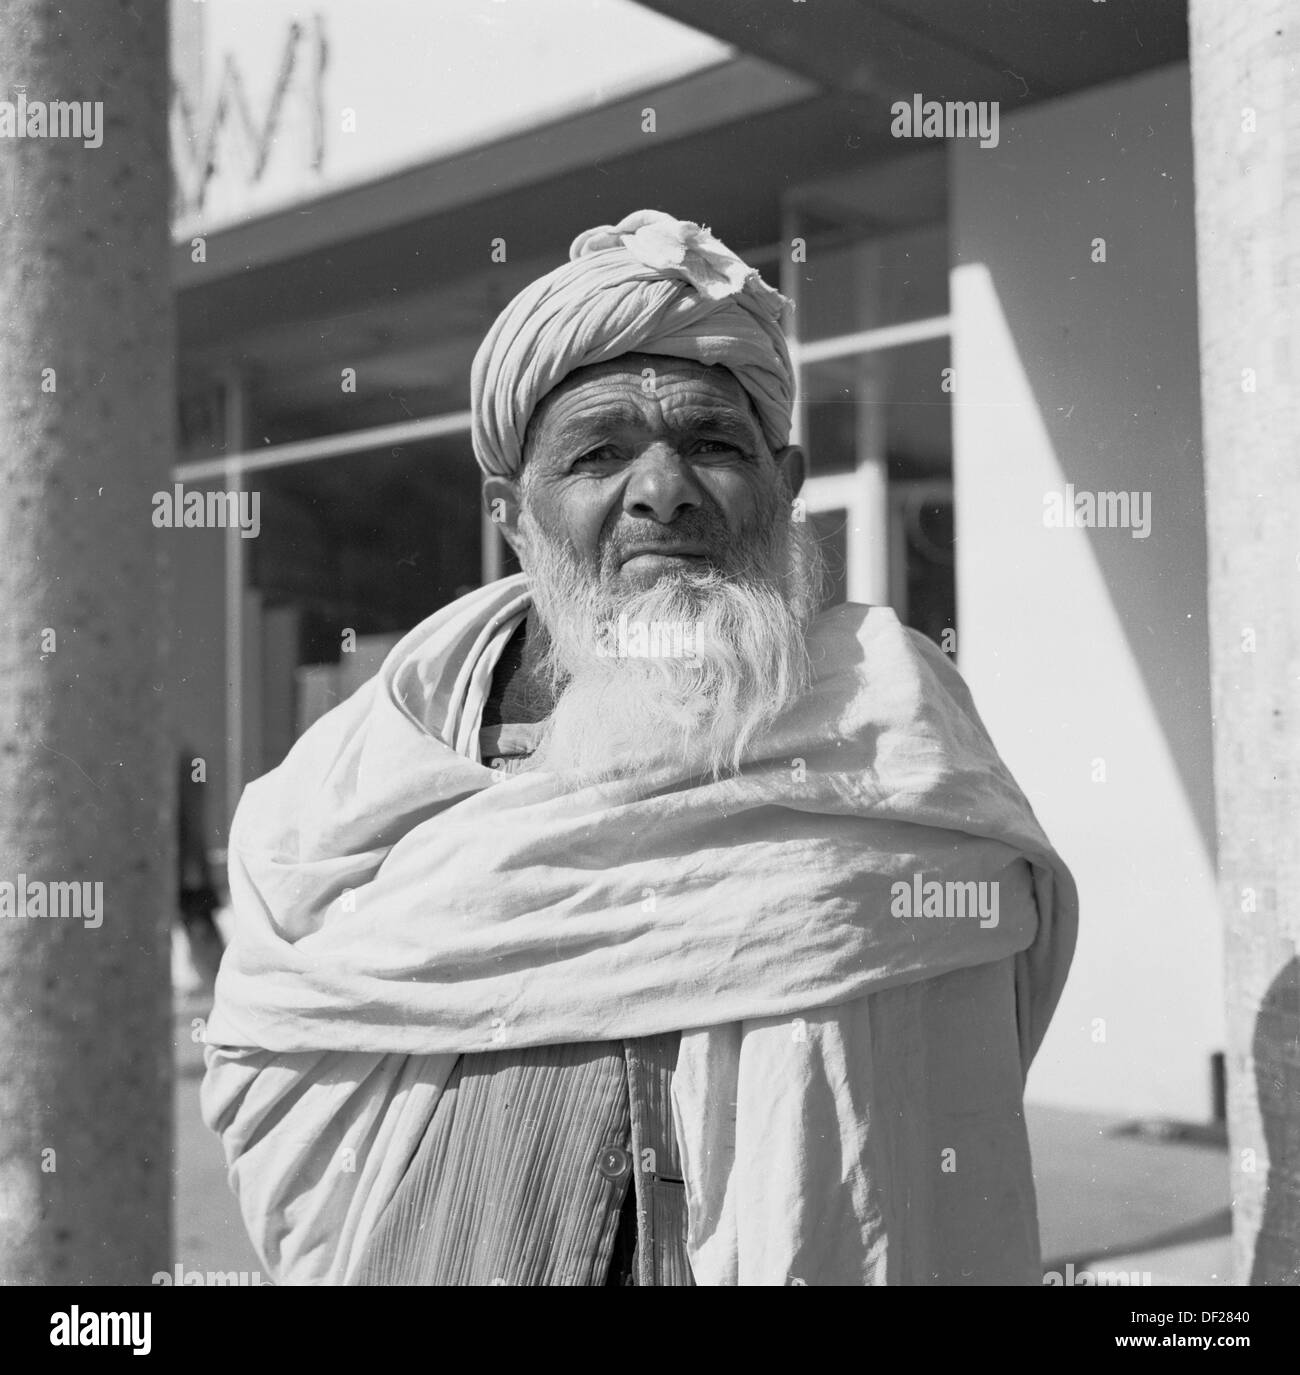 Historisches Bild aus den 1950er Jahren von J Allan Cash eines älteren bärtigen afghanischen Mannes in Kabul, Afghanistan, umwickelt mit einem traditionellen Baumwoll- oder Stoffgewand um ihn herum und mit Bart und Kopfschmuck. Stockfoto